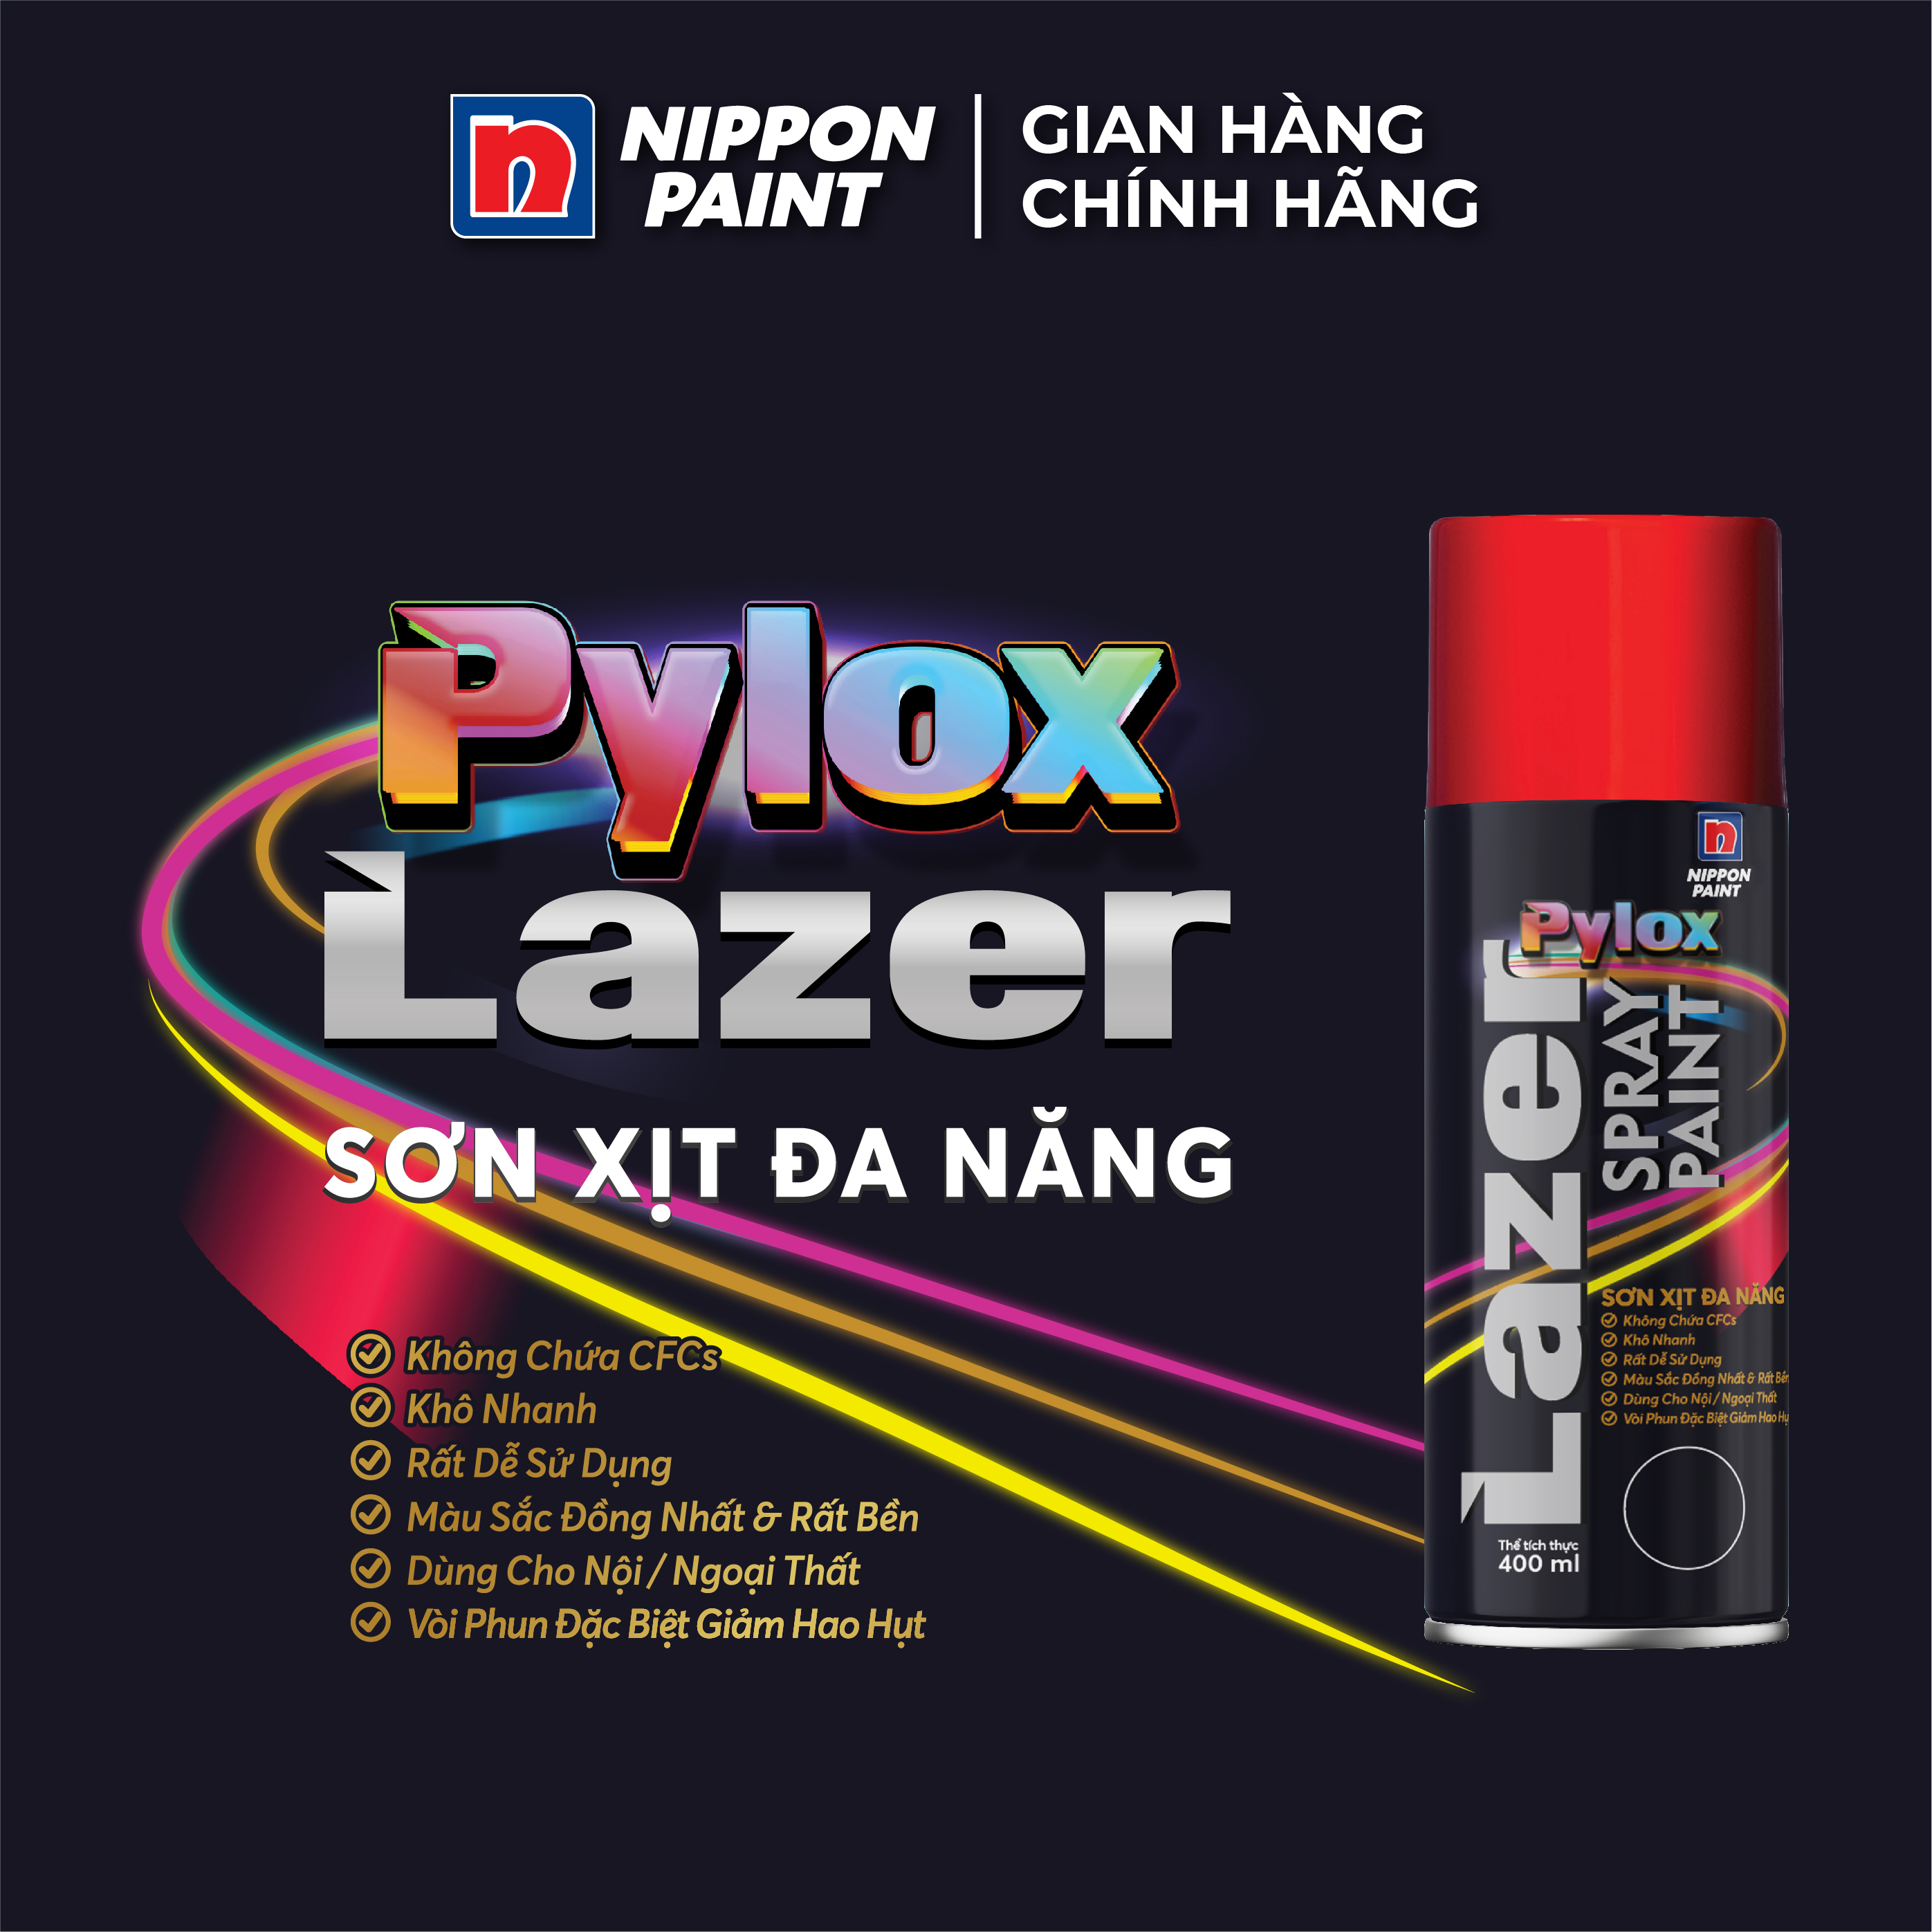 Sơn xịt đa năng Pylox Lazer  - 40 WHITE - Chính hãng NIPPON PAINT - Dung tích 400ml